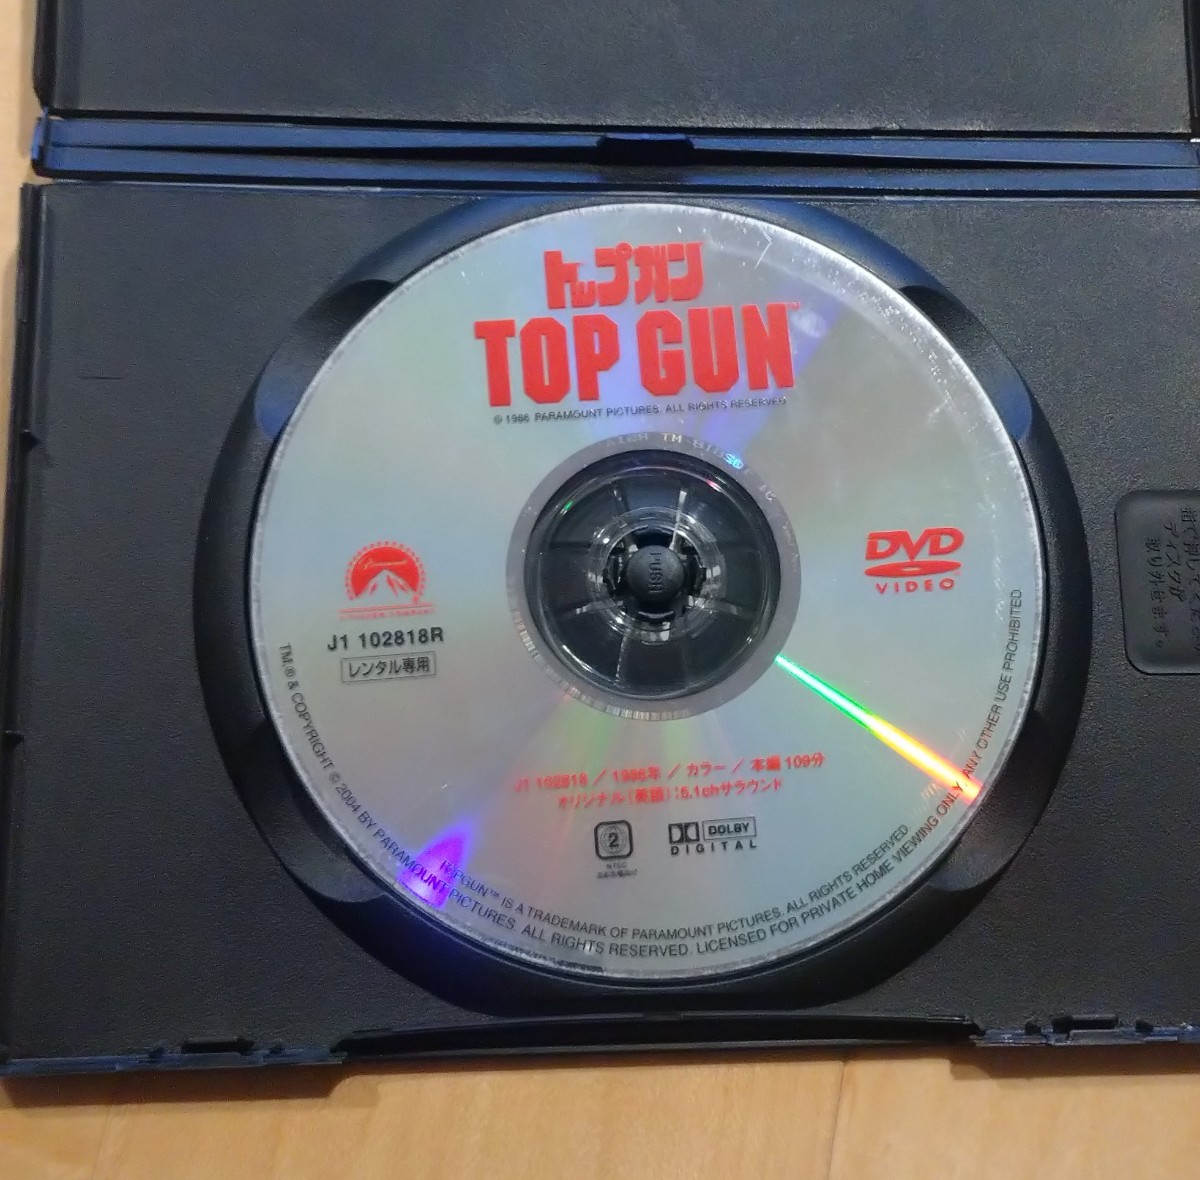 ∇即決∇ トップガン TOP GUN DVD ドルビーデジタル 5.1ch レンタル版 トム・クルーズ _画像3